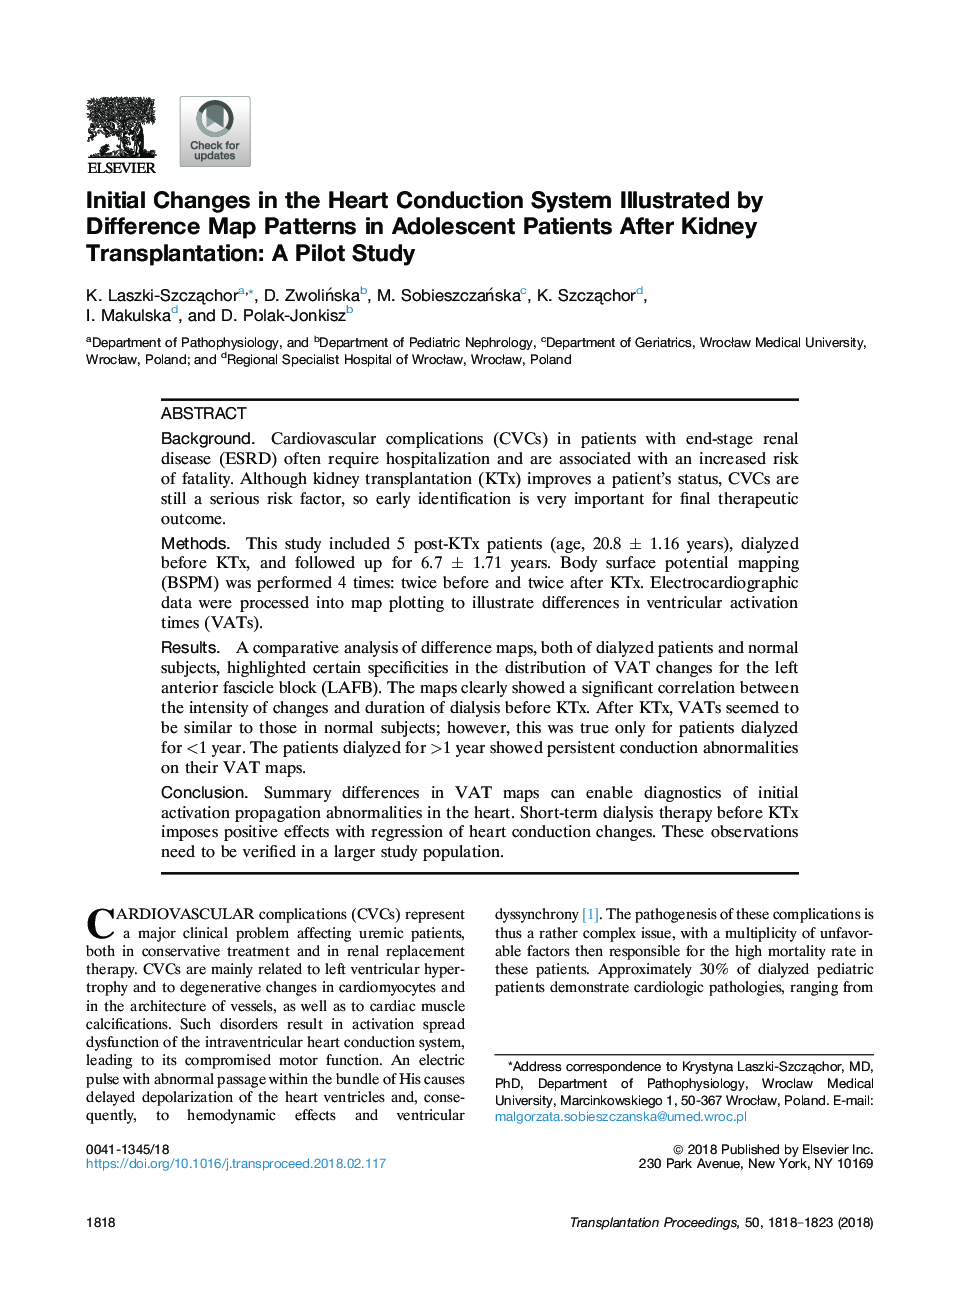 تغییرات اولیه در سیستم هدایت قلب که به وسیله الگوهای تفاوت در بیماران نوجوان پس از پیوند کلیه به چشم می خورد: یک مطالعه خلبان 